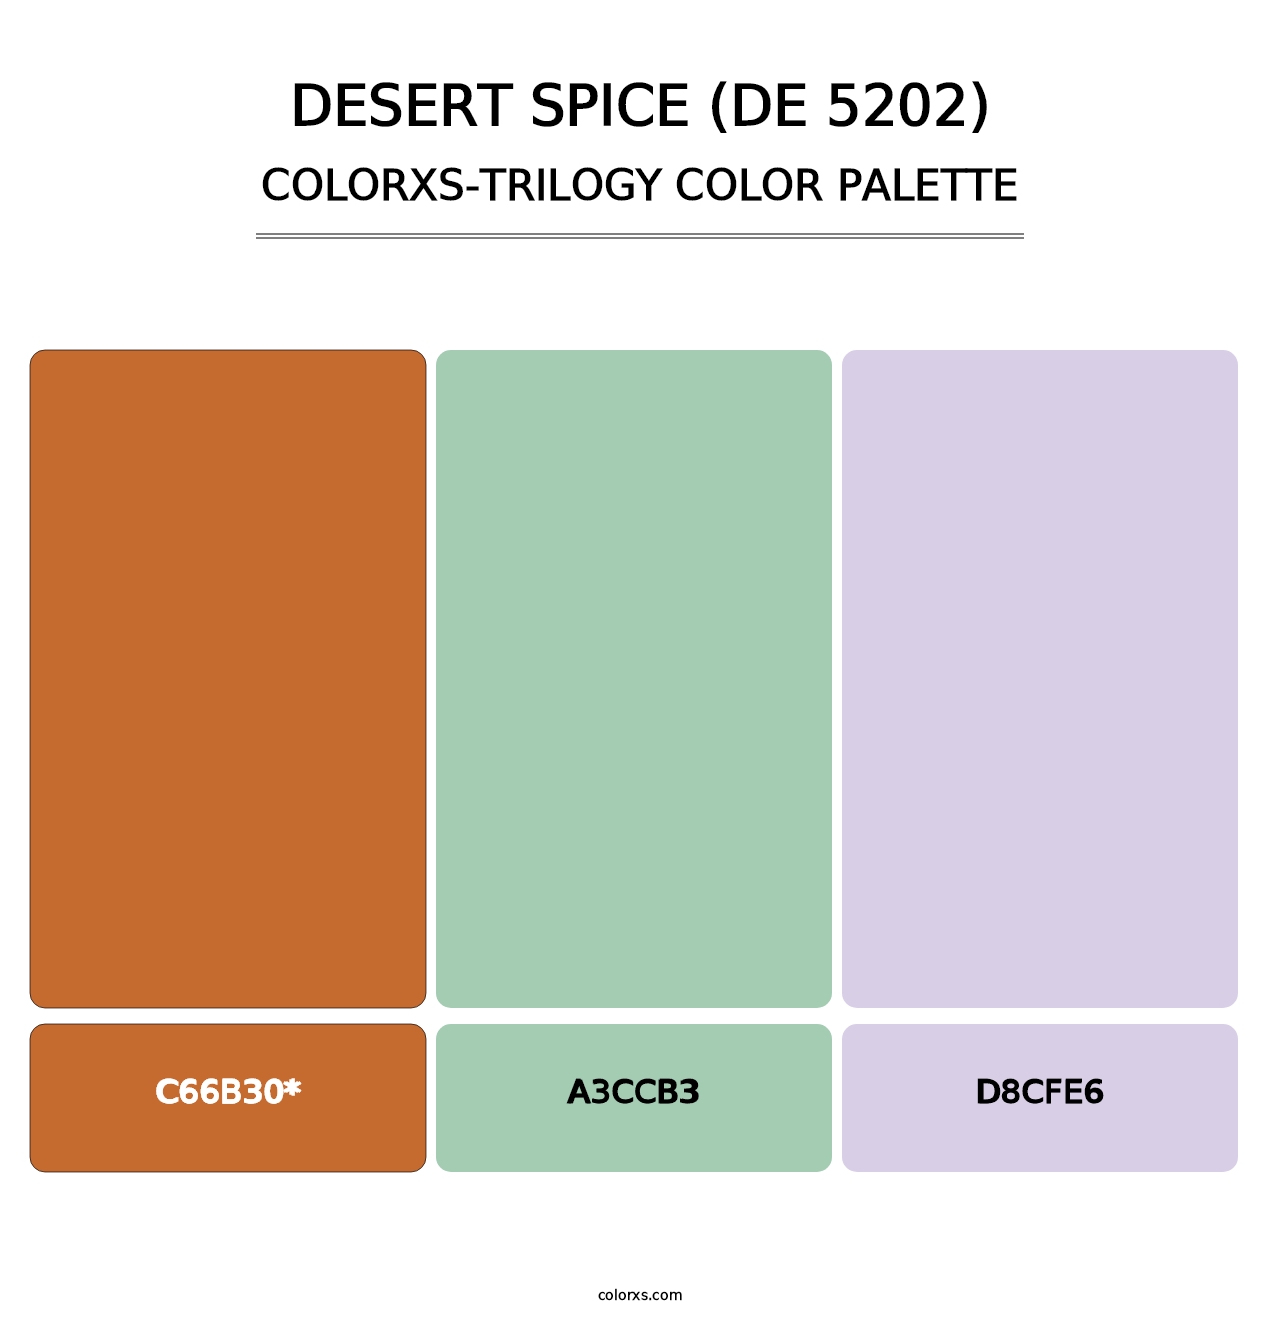 Desert Spice (DE 5202) - Colorxs Trilogy Palette